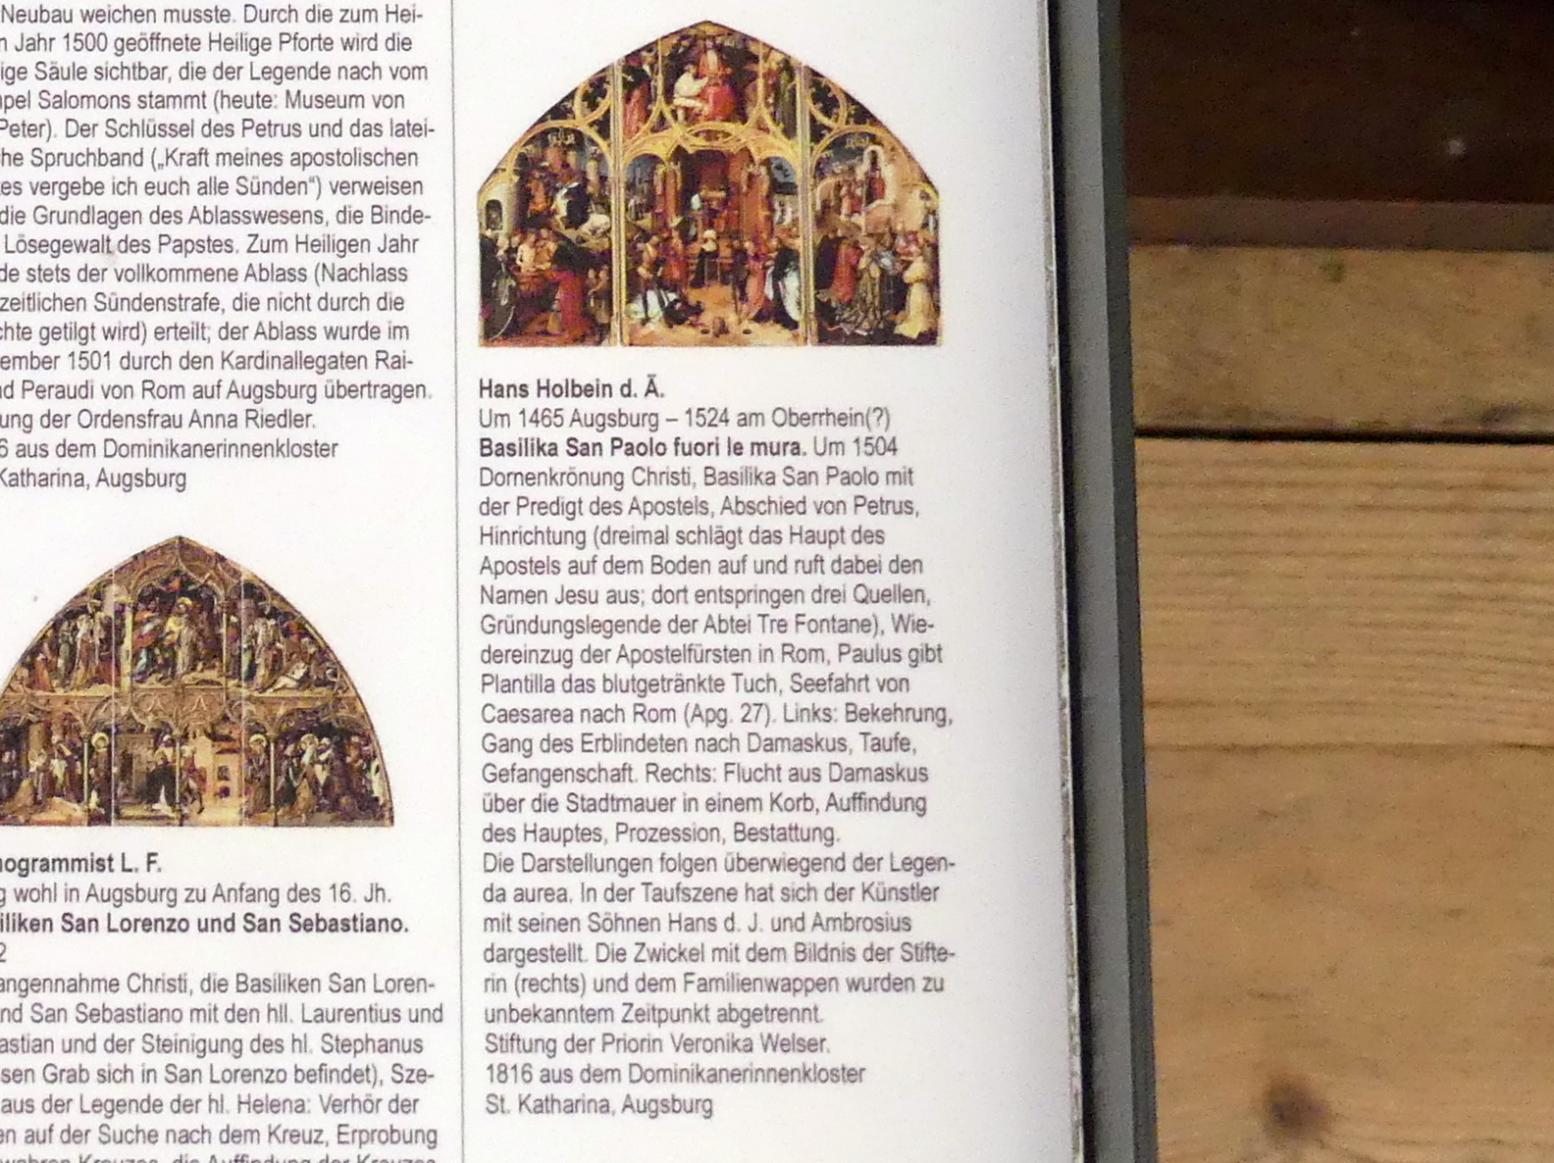 Hans Holbein der Ältere (1493–1520), Basilika San Paolo fuori le mura, Augsburg, ehem. Dominikanerinnenkloster St. Katharina (Kirche 1830 zerstört), jetzt Augsburg, Staatsgalerie in der ehem. Katharinenkirche, Saal 3, um 1504, Bild 3/3